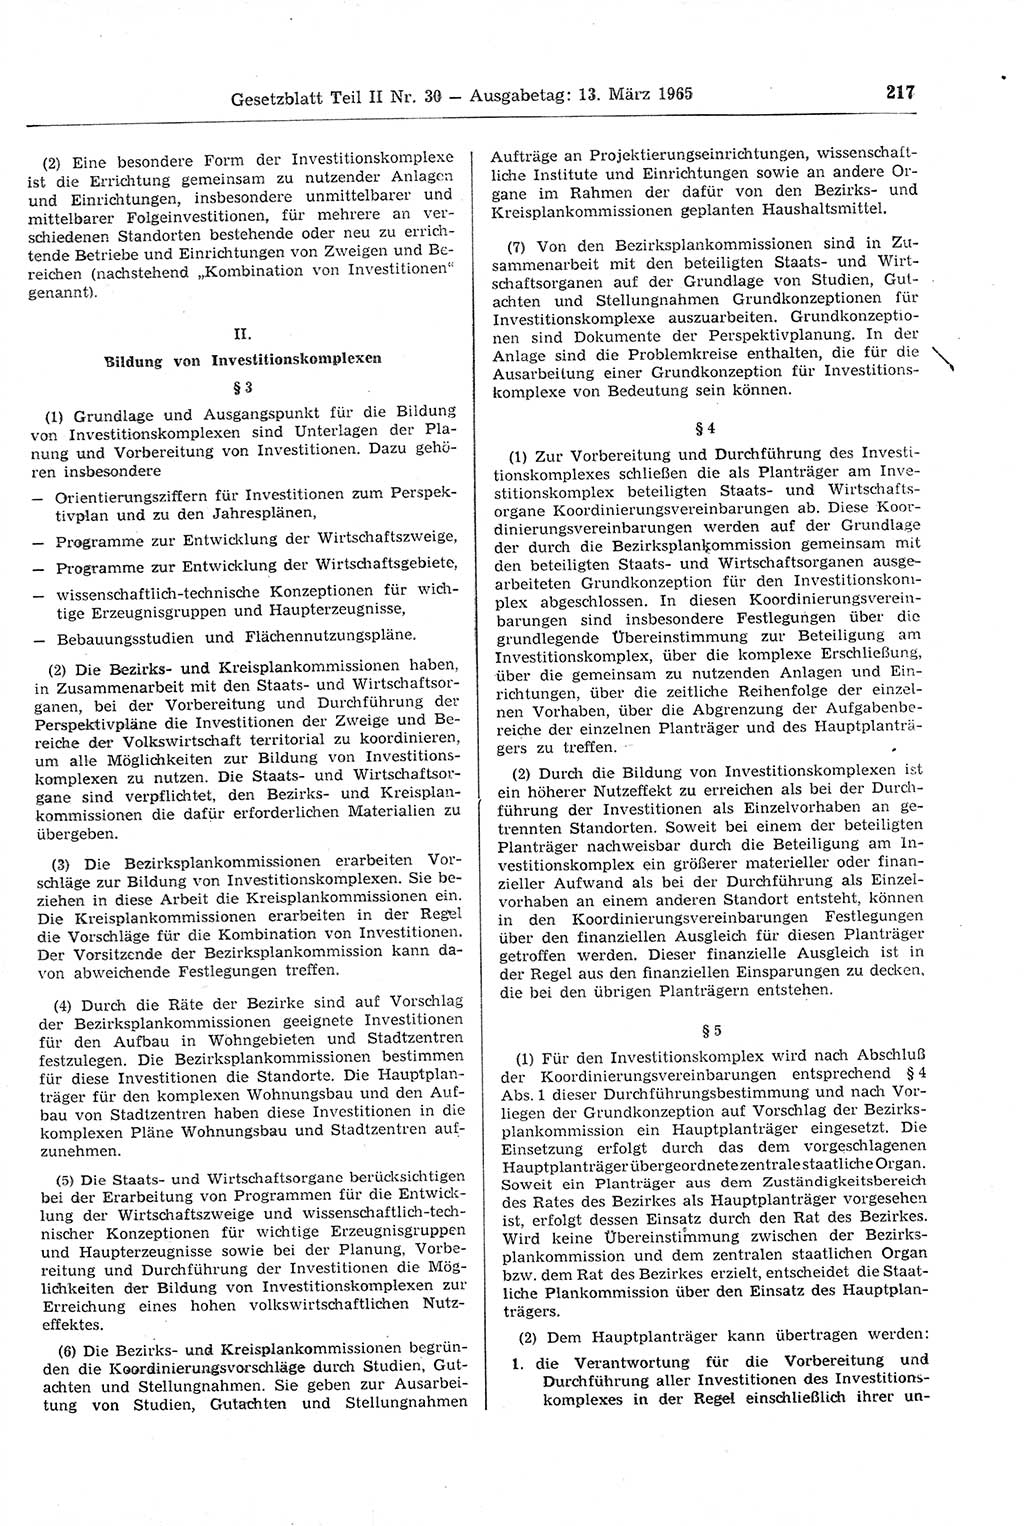 Gesetzblatt (GBl.) der Deutschen Demokratischen Republik (DDR) Teil ⅠⅠ 1965, Seite 217 (GBl. DDR ⅠⅠ 1965, S. 217)